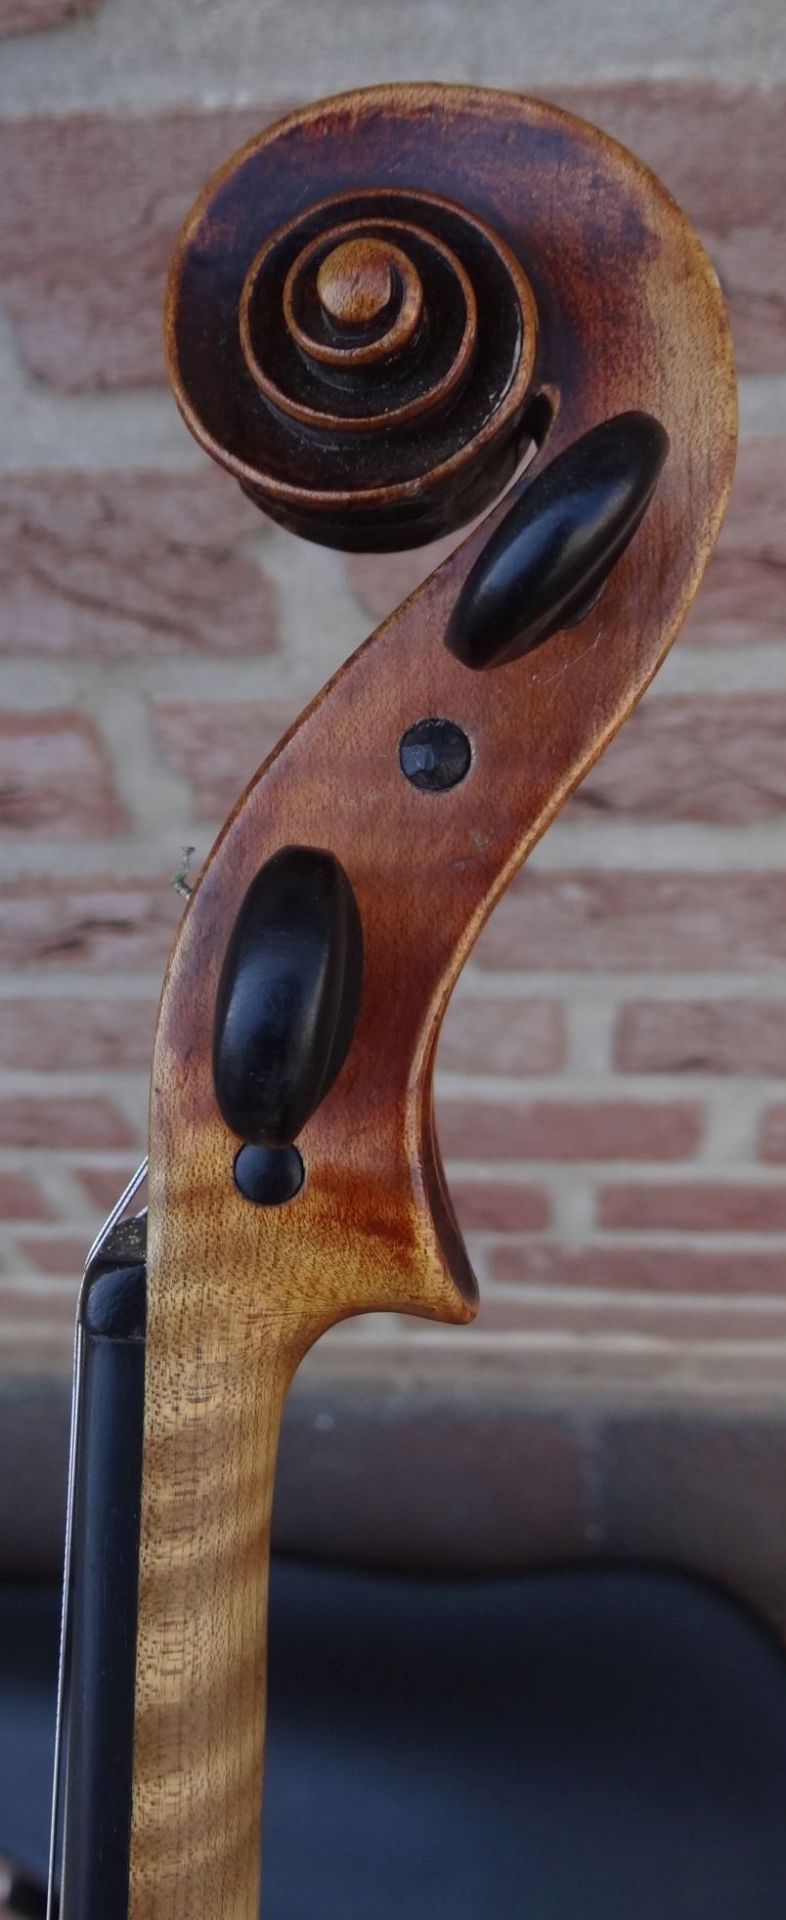 alte Geige im Koffer, innen Etikett "Ciovan Paolo Meggine", 19/20 Jhd?, L-62 cm, gut erhalten - Bild 4 aus 10